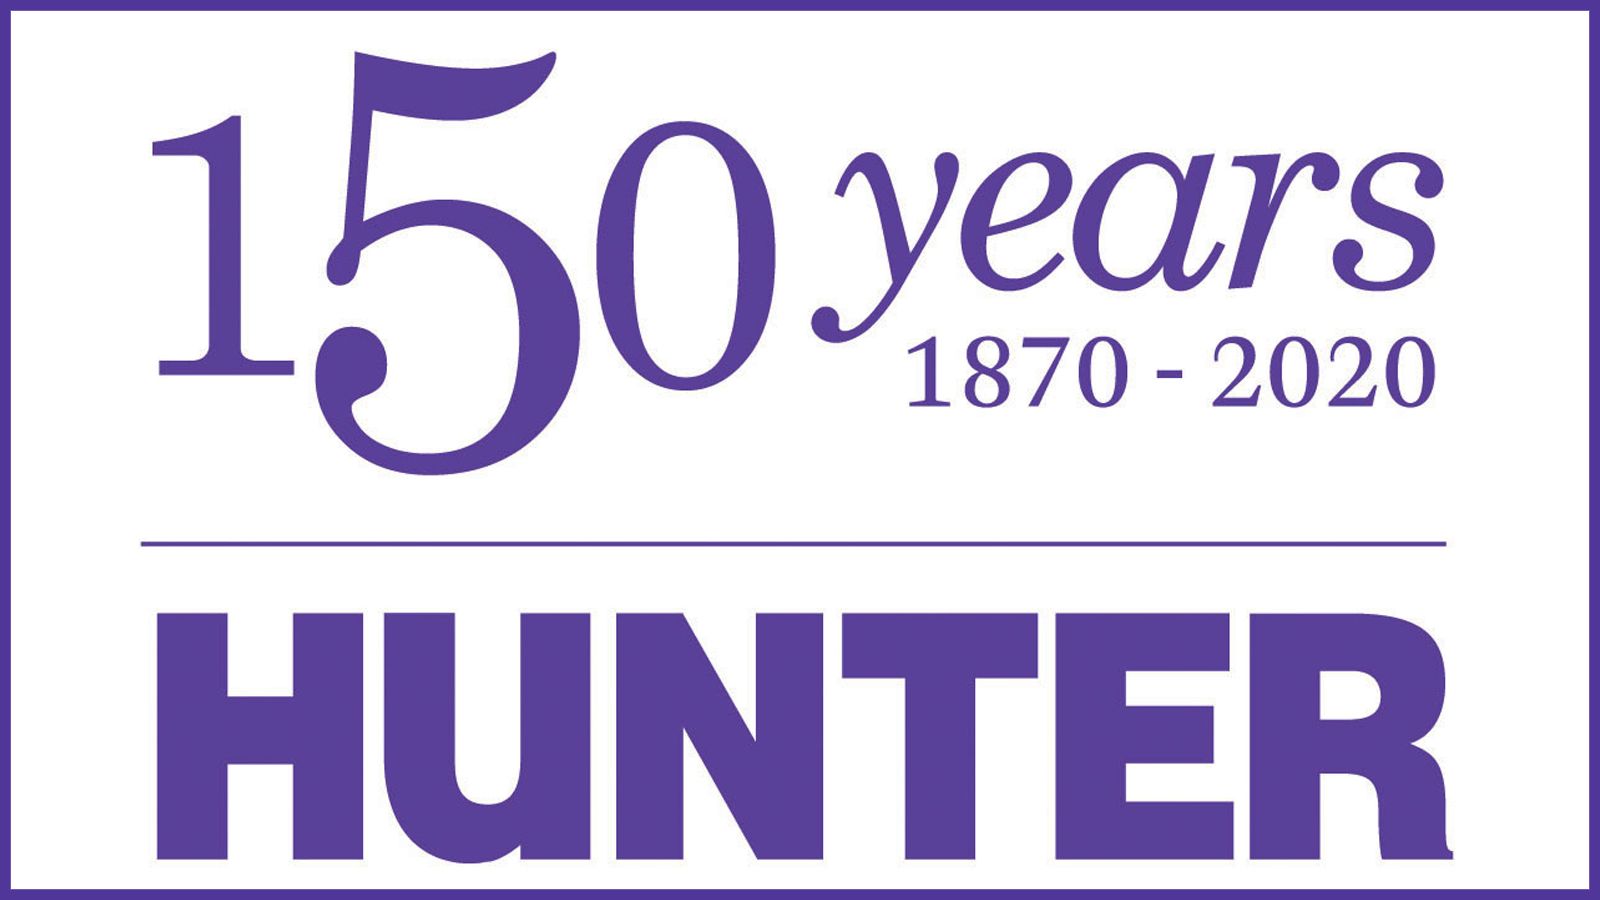 Hunter College 150th anniversary logo